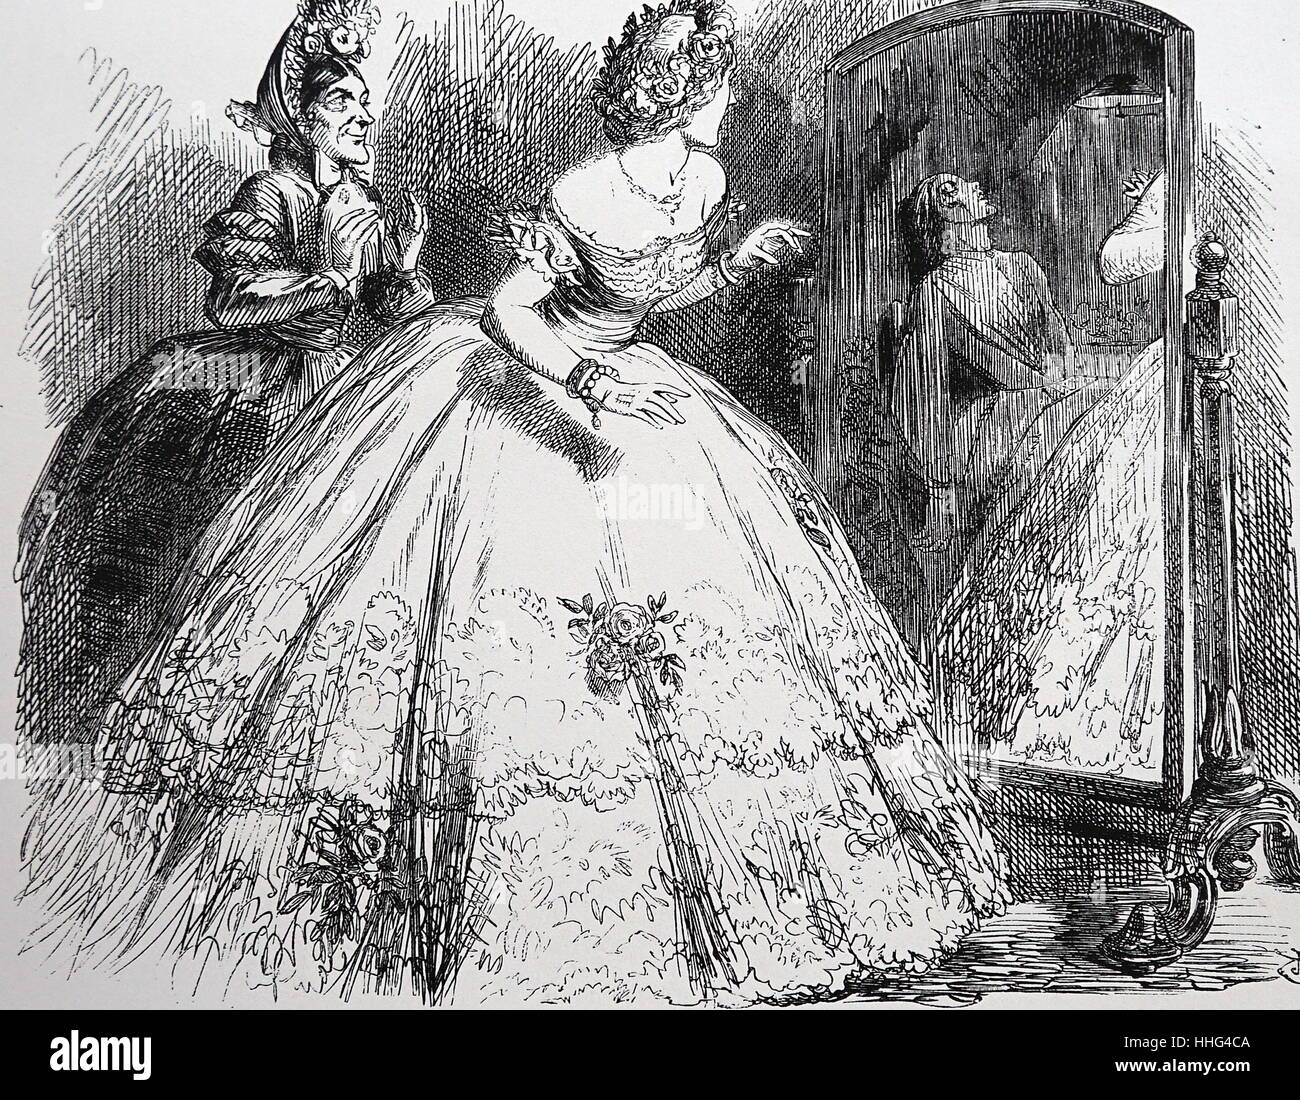 В 1871 в английском журнале панч. Иллюстрации викторианской эпохи. Рисунки викторианской эпохи. Опасная мода прошлых веков.